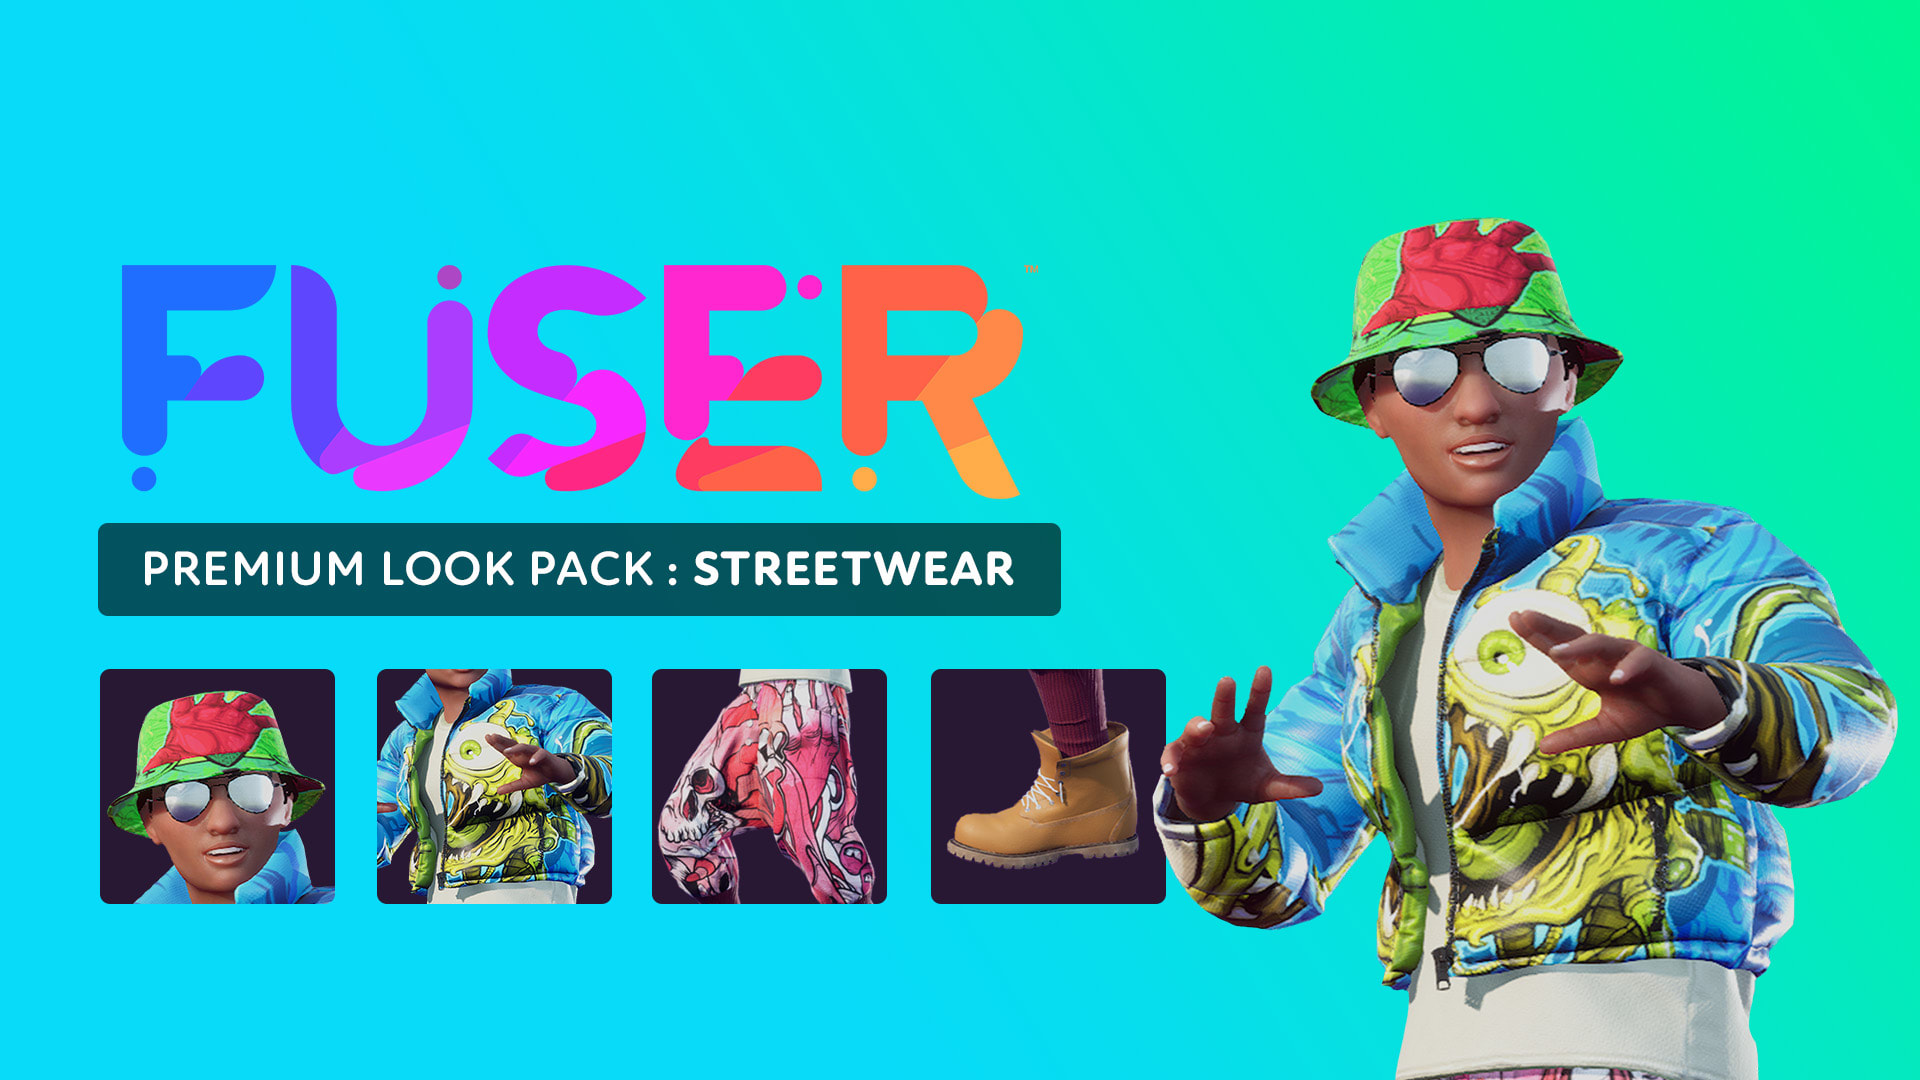 Premium Look Pack: Streetwear